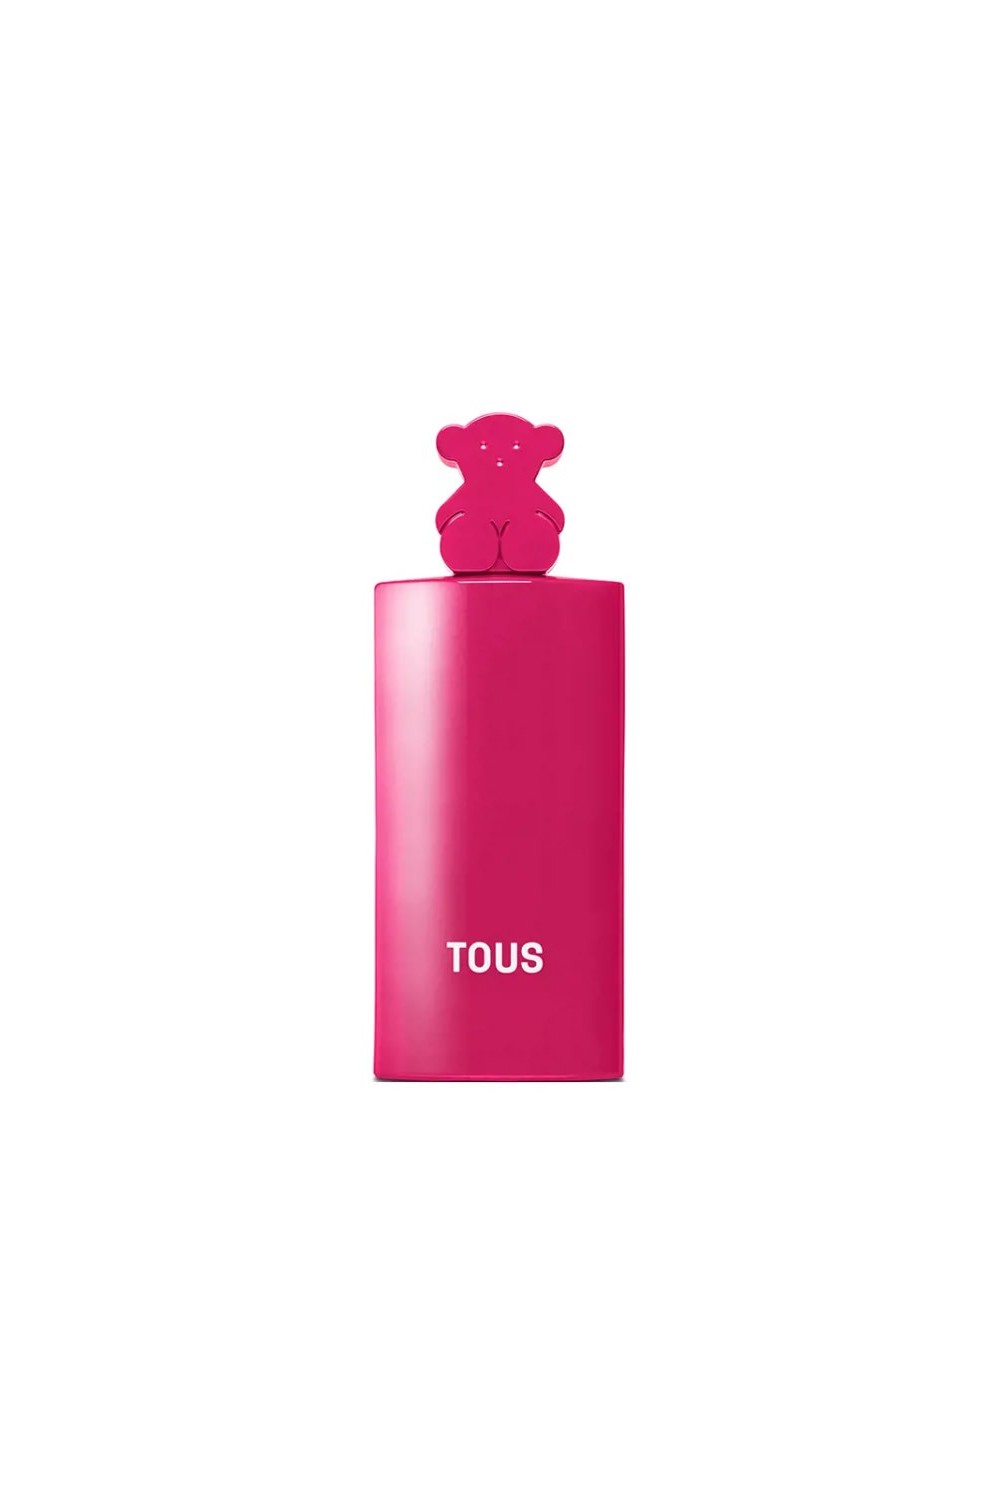 Tous More More Pink Eau De Toilette Spray 50ml